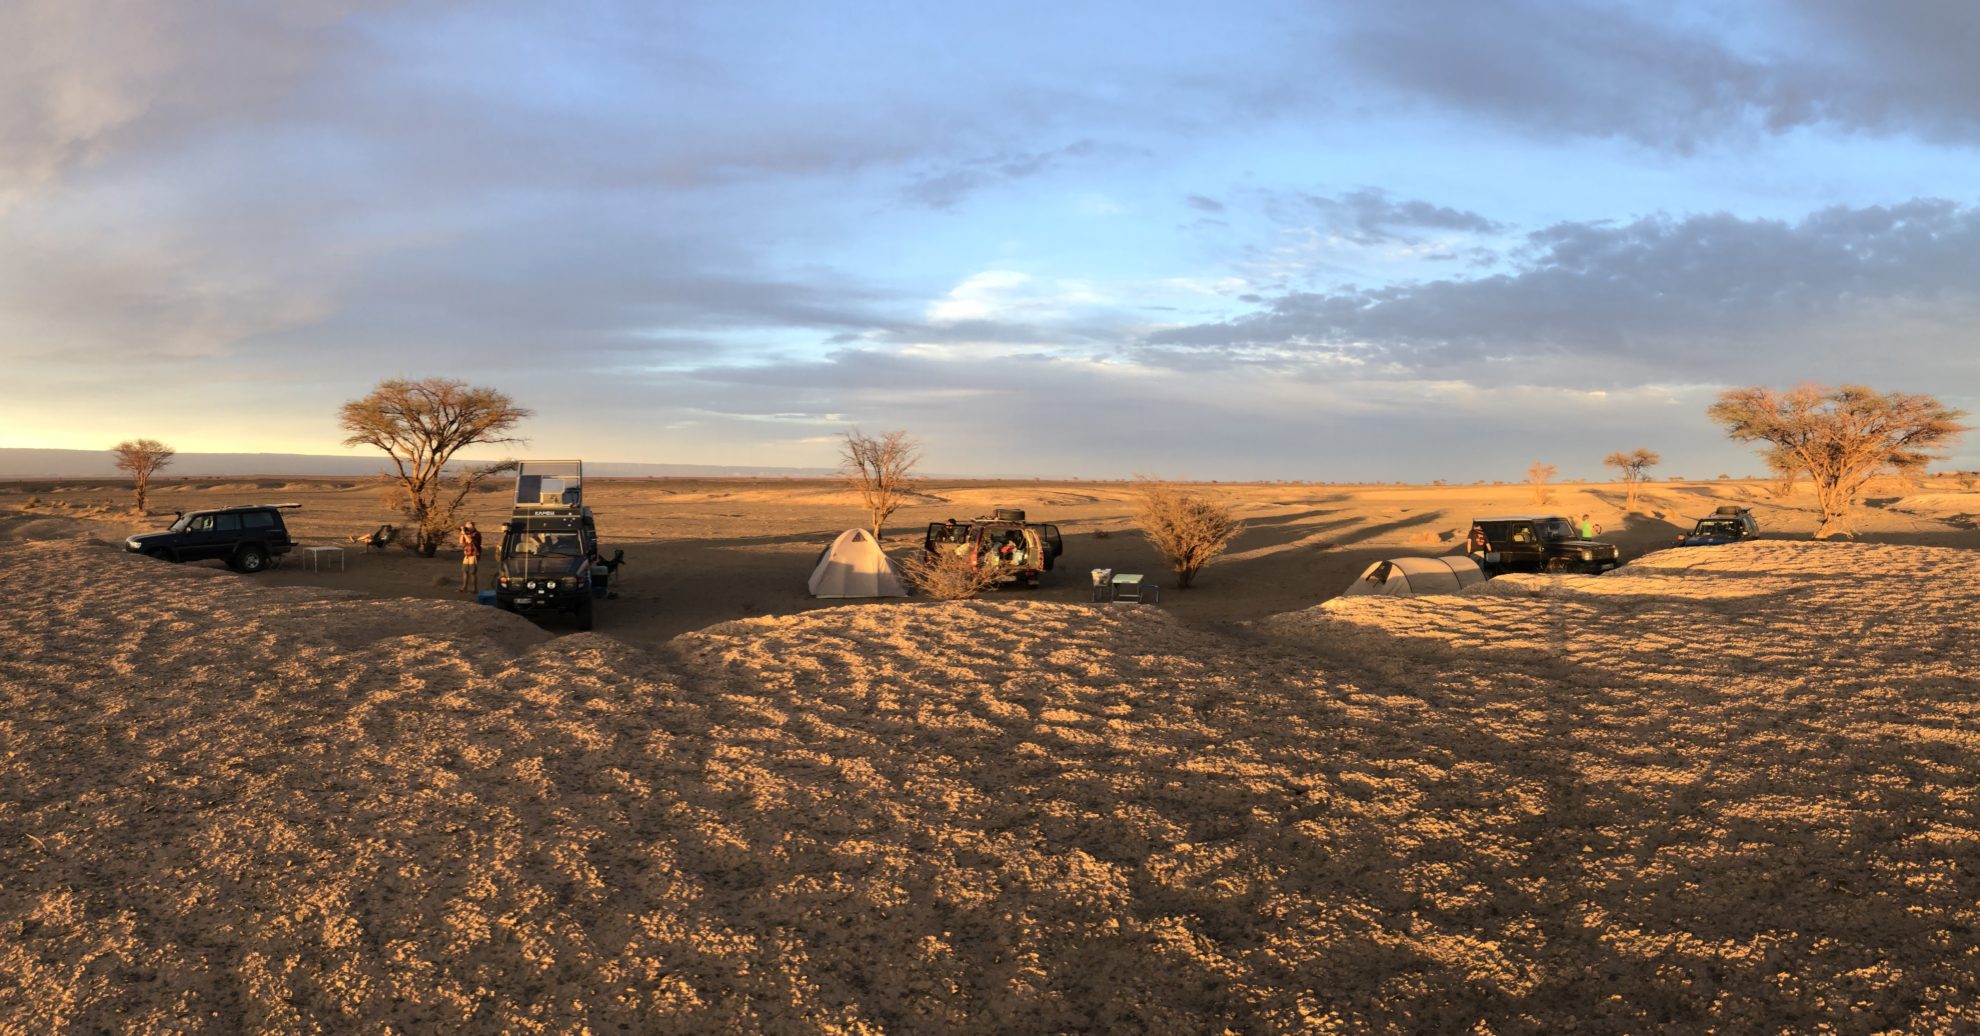 Lagerplatz in der Wüste am Abend